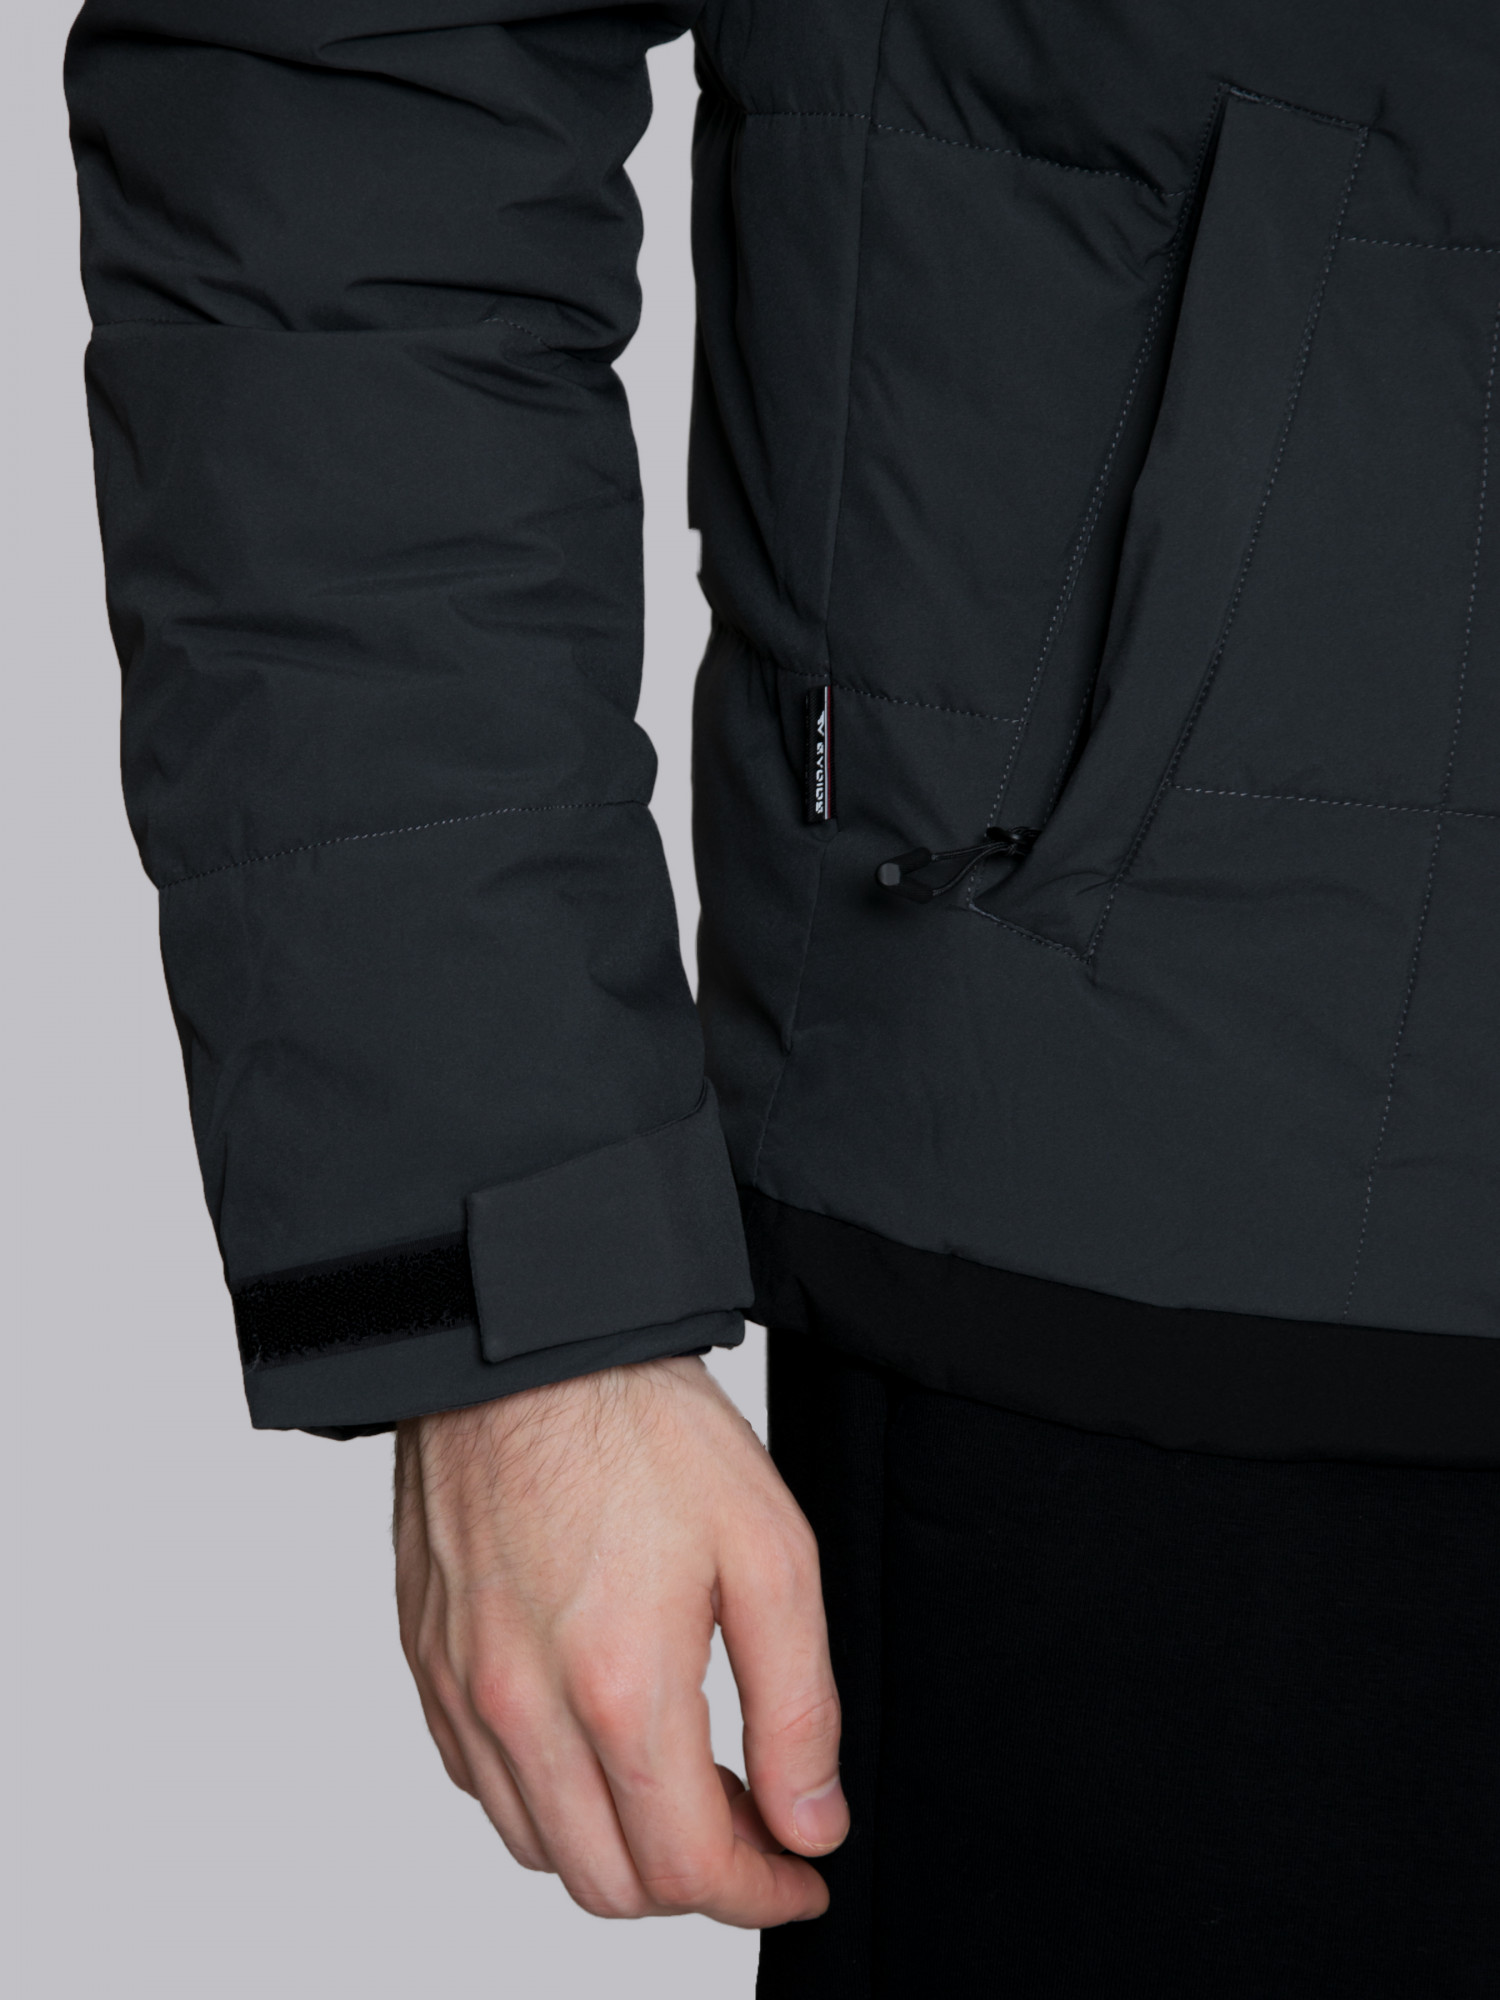 Куртка мужская Evoids Alphard темно-серая 711333-020